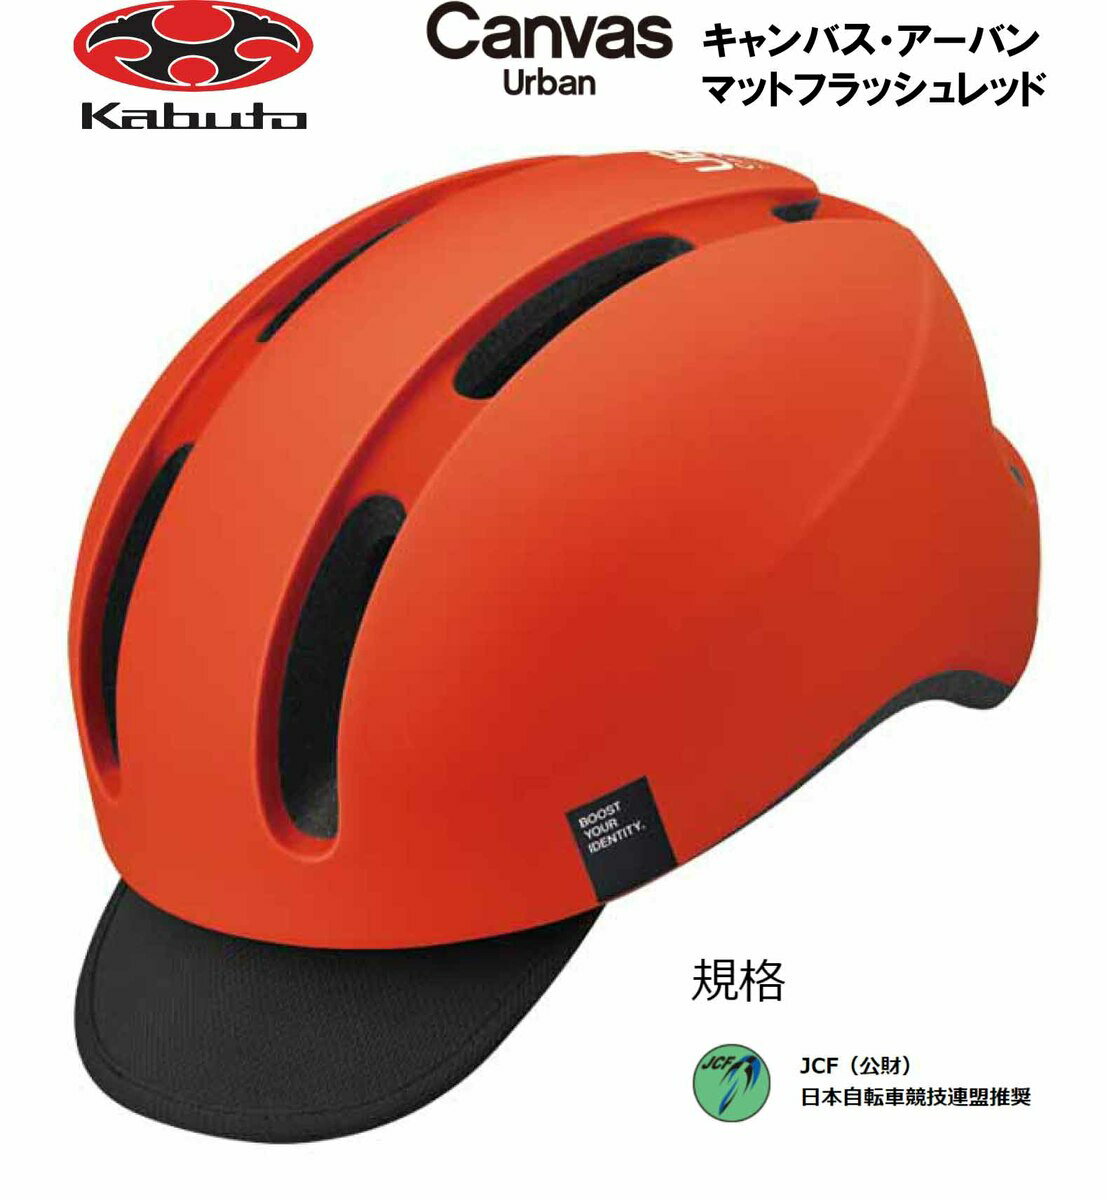 オージーケー カブト OGK KABUTO Canvas Urban キャンバス アーバン ヘルメット M/L 頭周のめやす 57~59cm マットフラッシュレッド